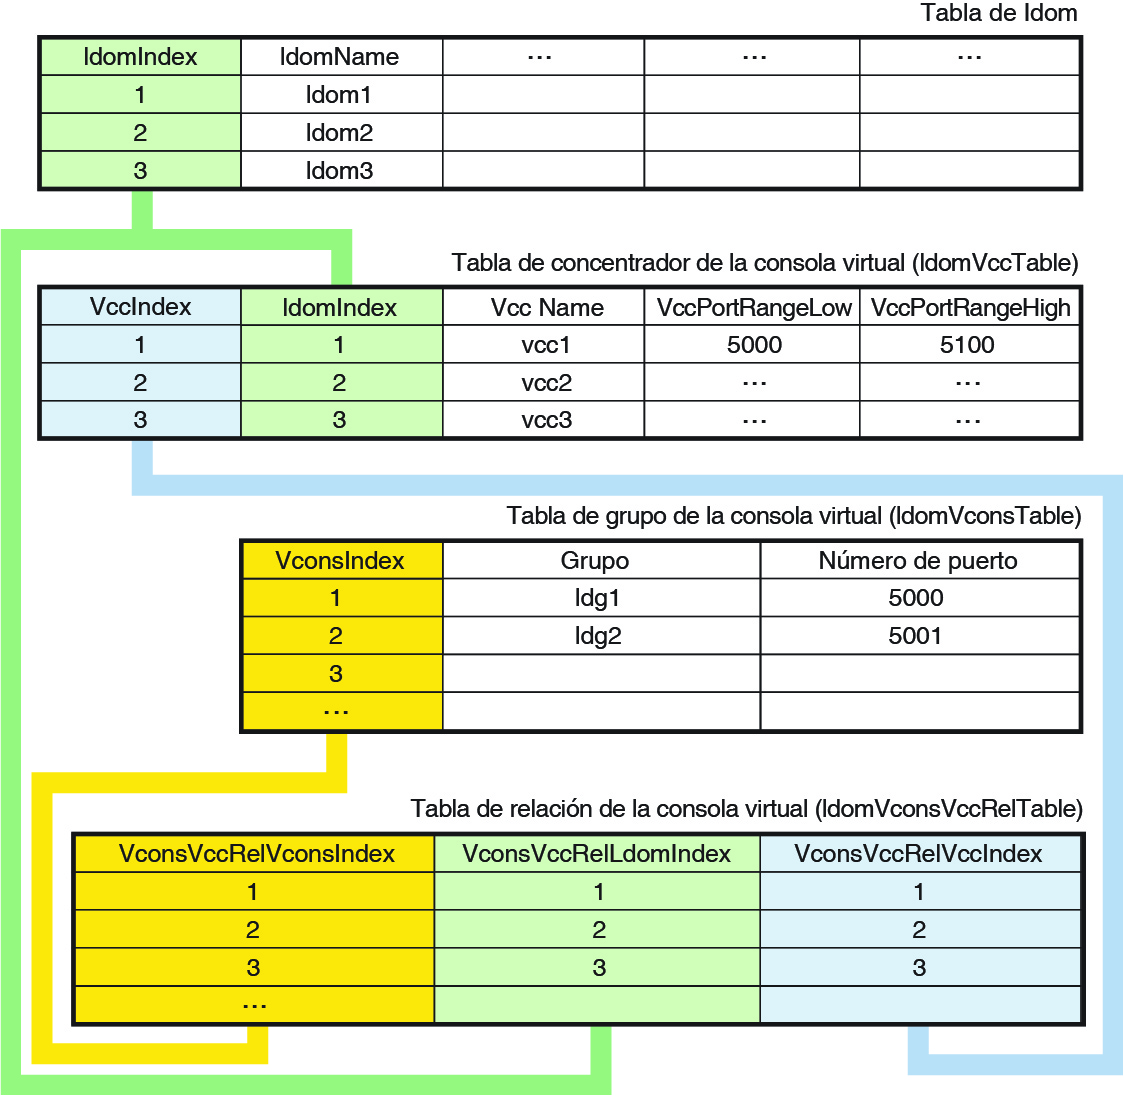 image:El diagrama muestra la relación entre las tablas de la consola virtual y la tabla de dominio.